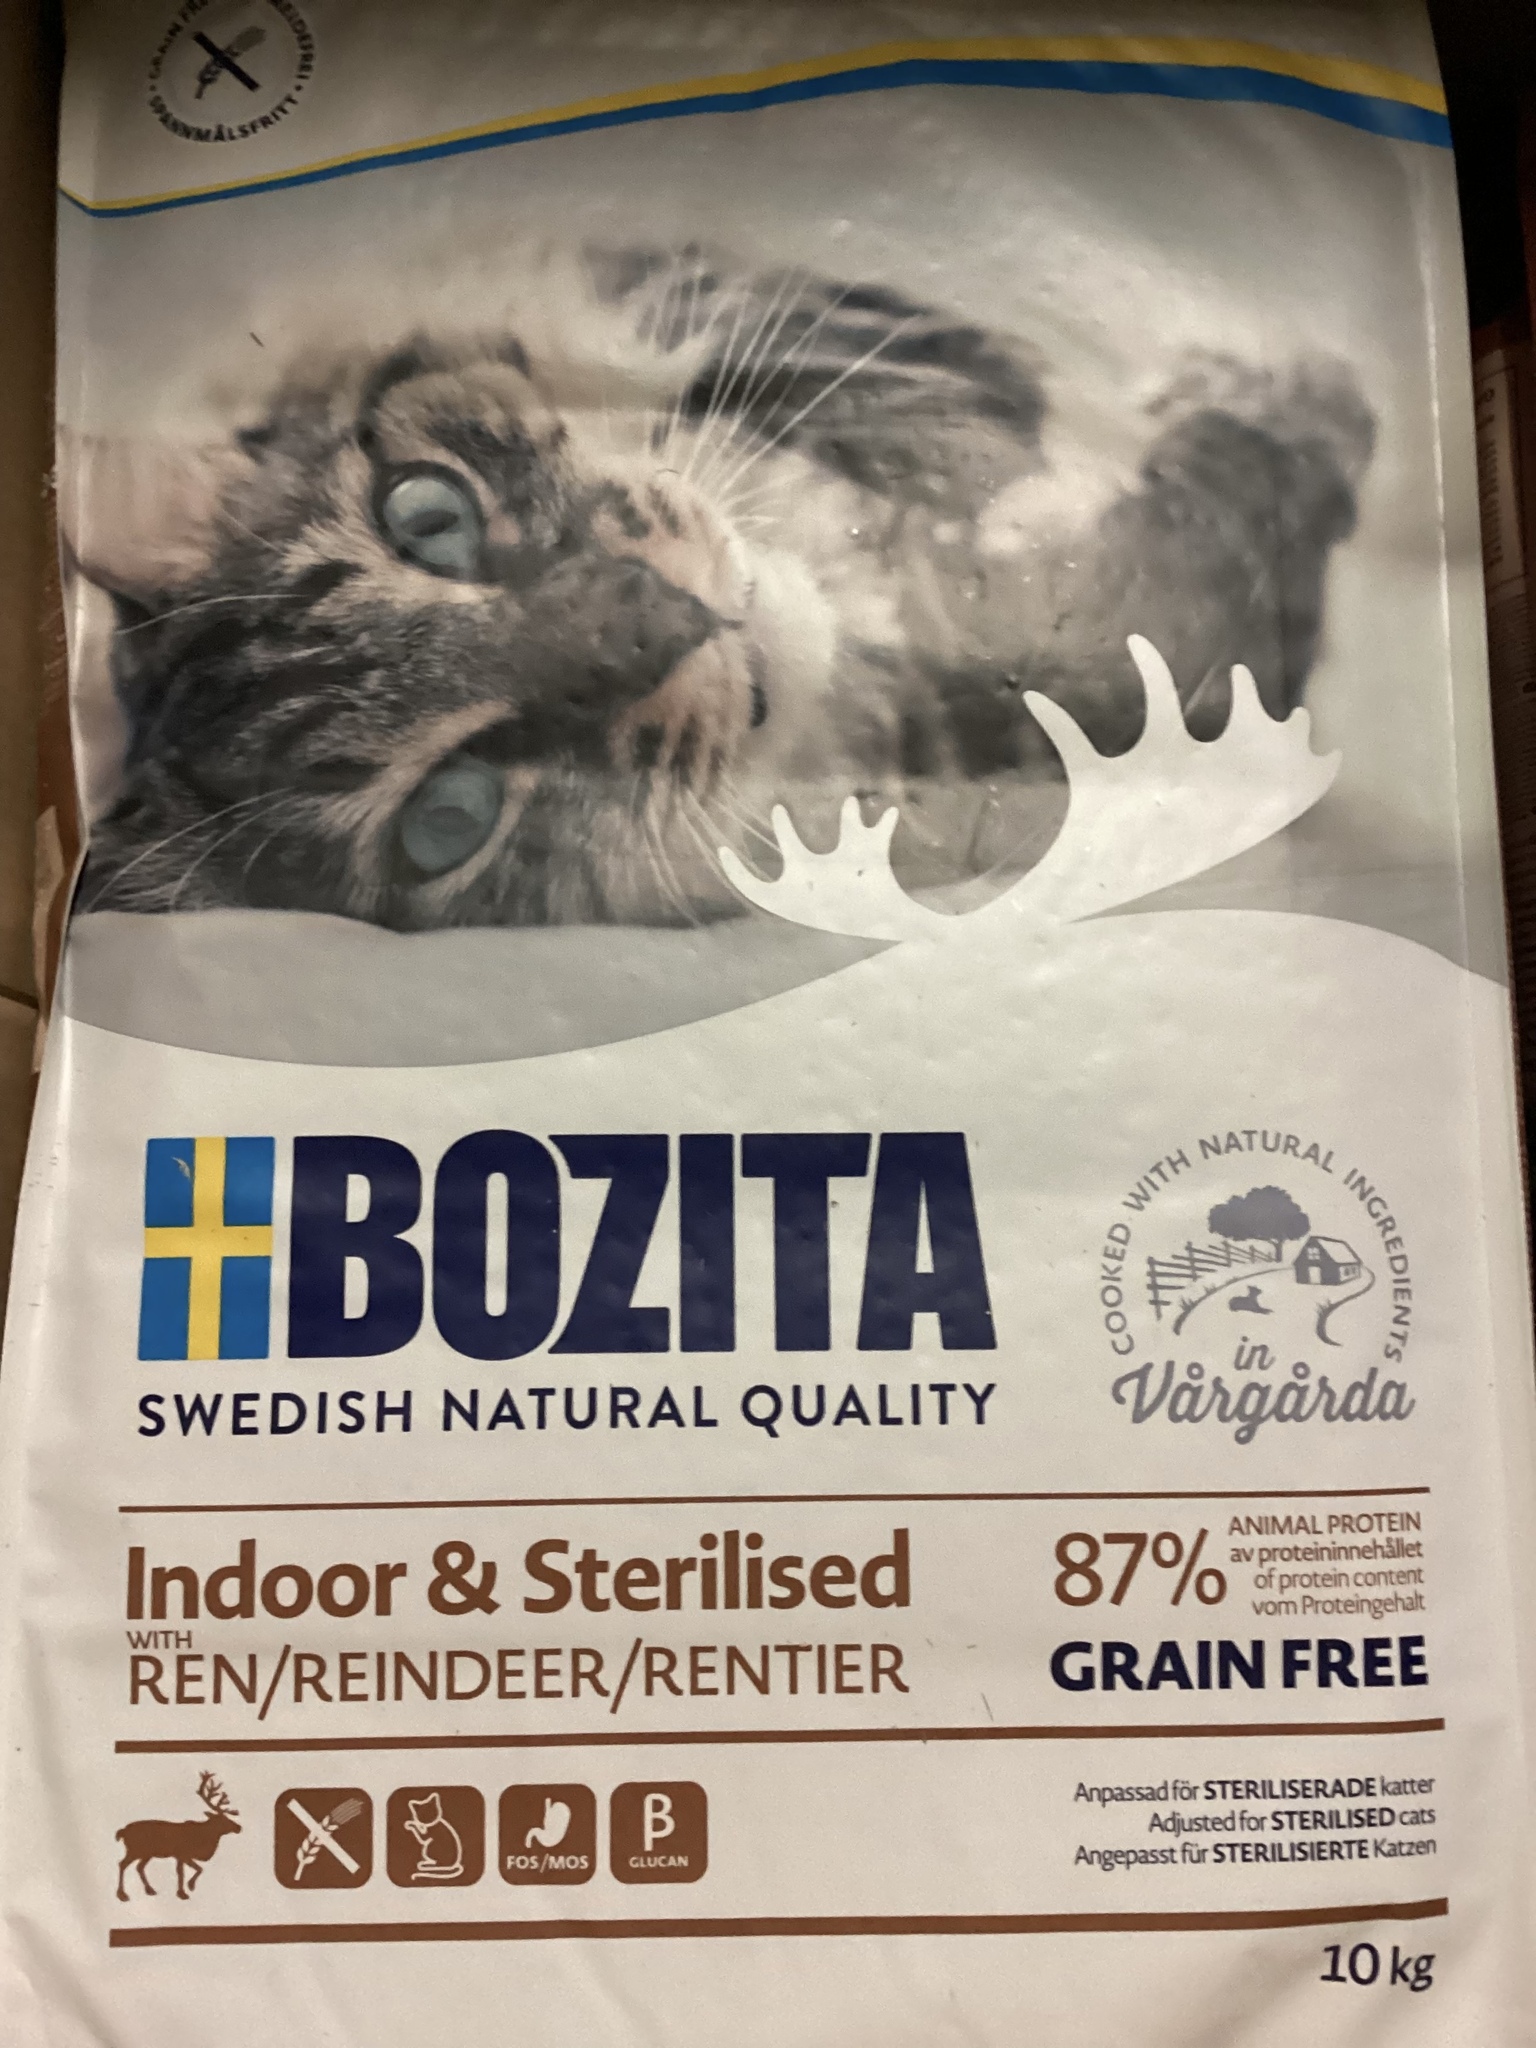 Bozita Indoor and Sterilised Grain Free Reindeer 10kg